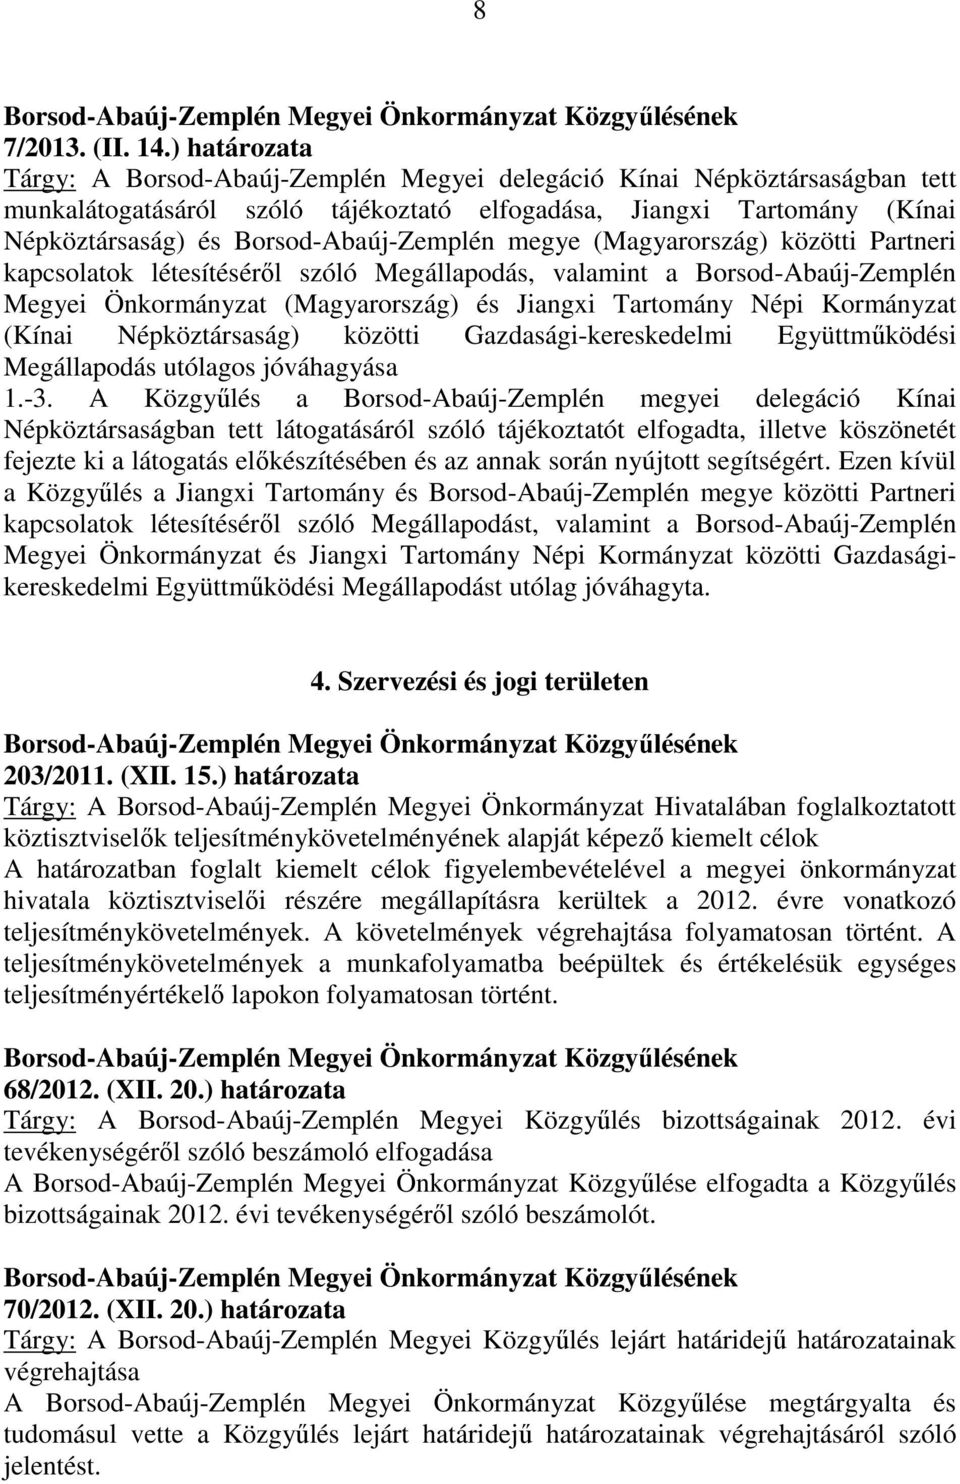 Borsod-Abaúj-Zemplén megye (Magyarország) közötti Partneri kapcsolatok létesítéséről szóló Megállapodás, valamint a Borsod-Abaúj-Zemplén Megyei Önkormányzat (Magyarország) és Jiangxi Tartomány Népi